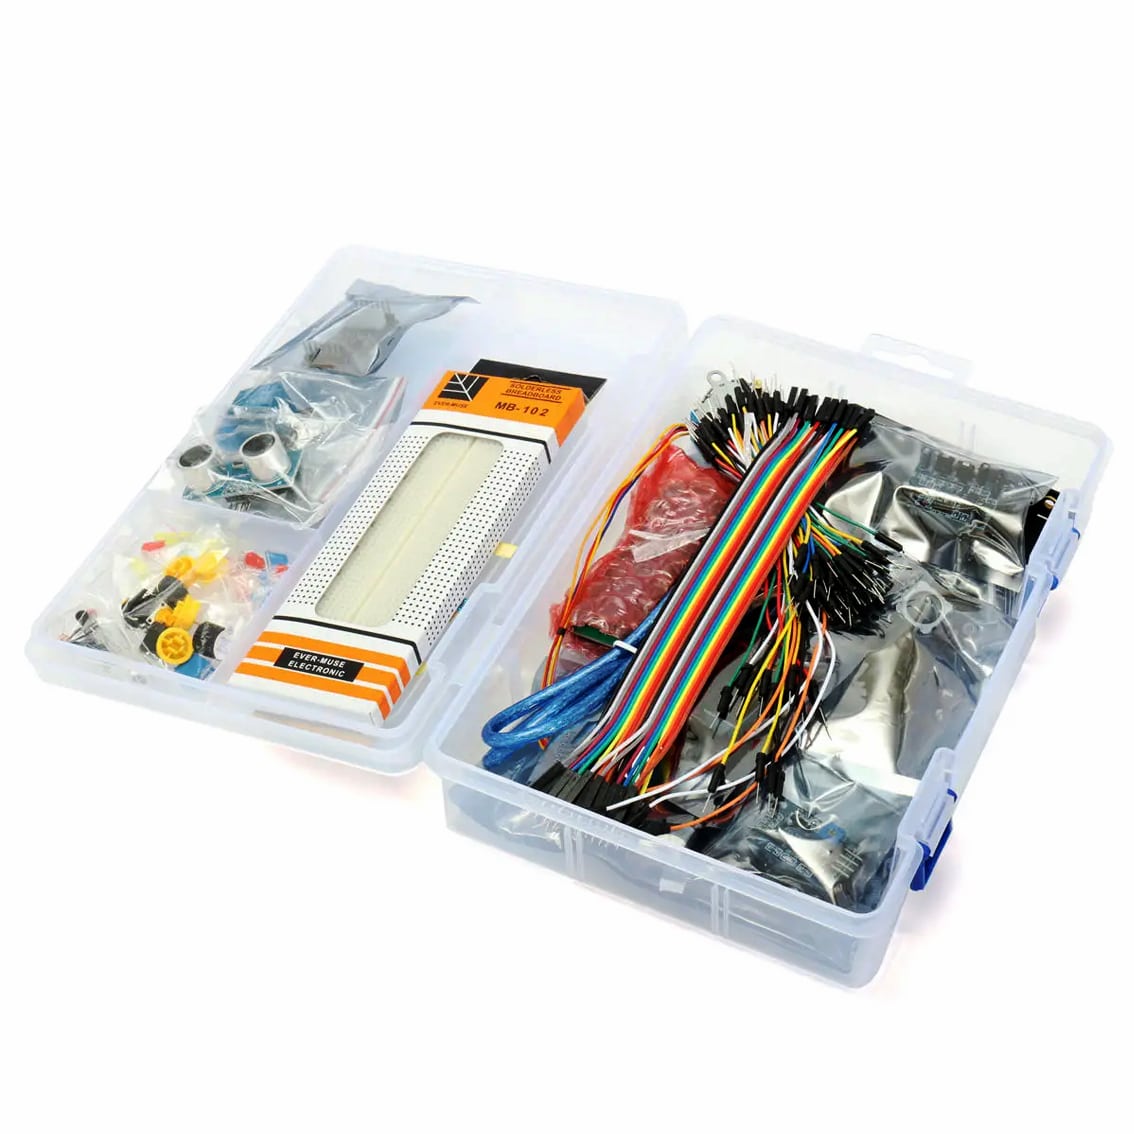 Mega 2560 Super Starter Kit – Arduino IDE Compatible 2